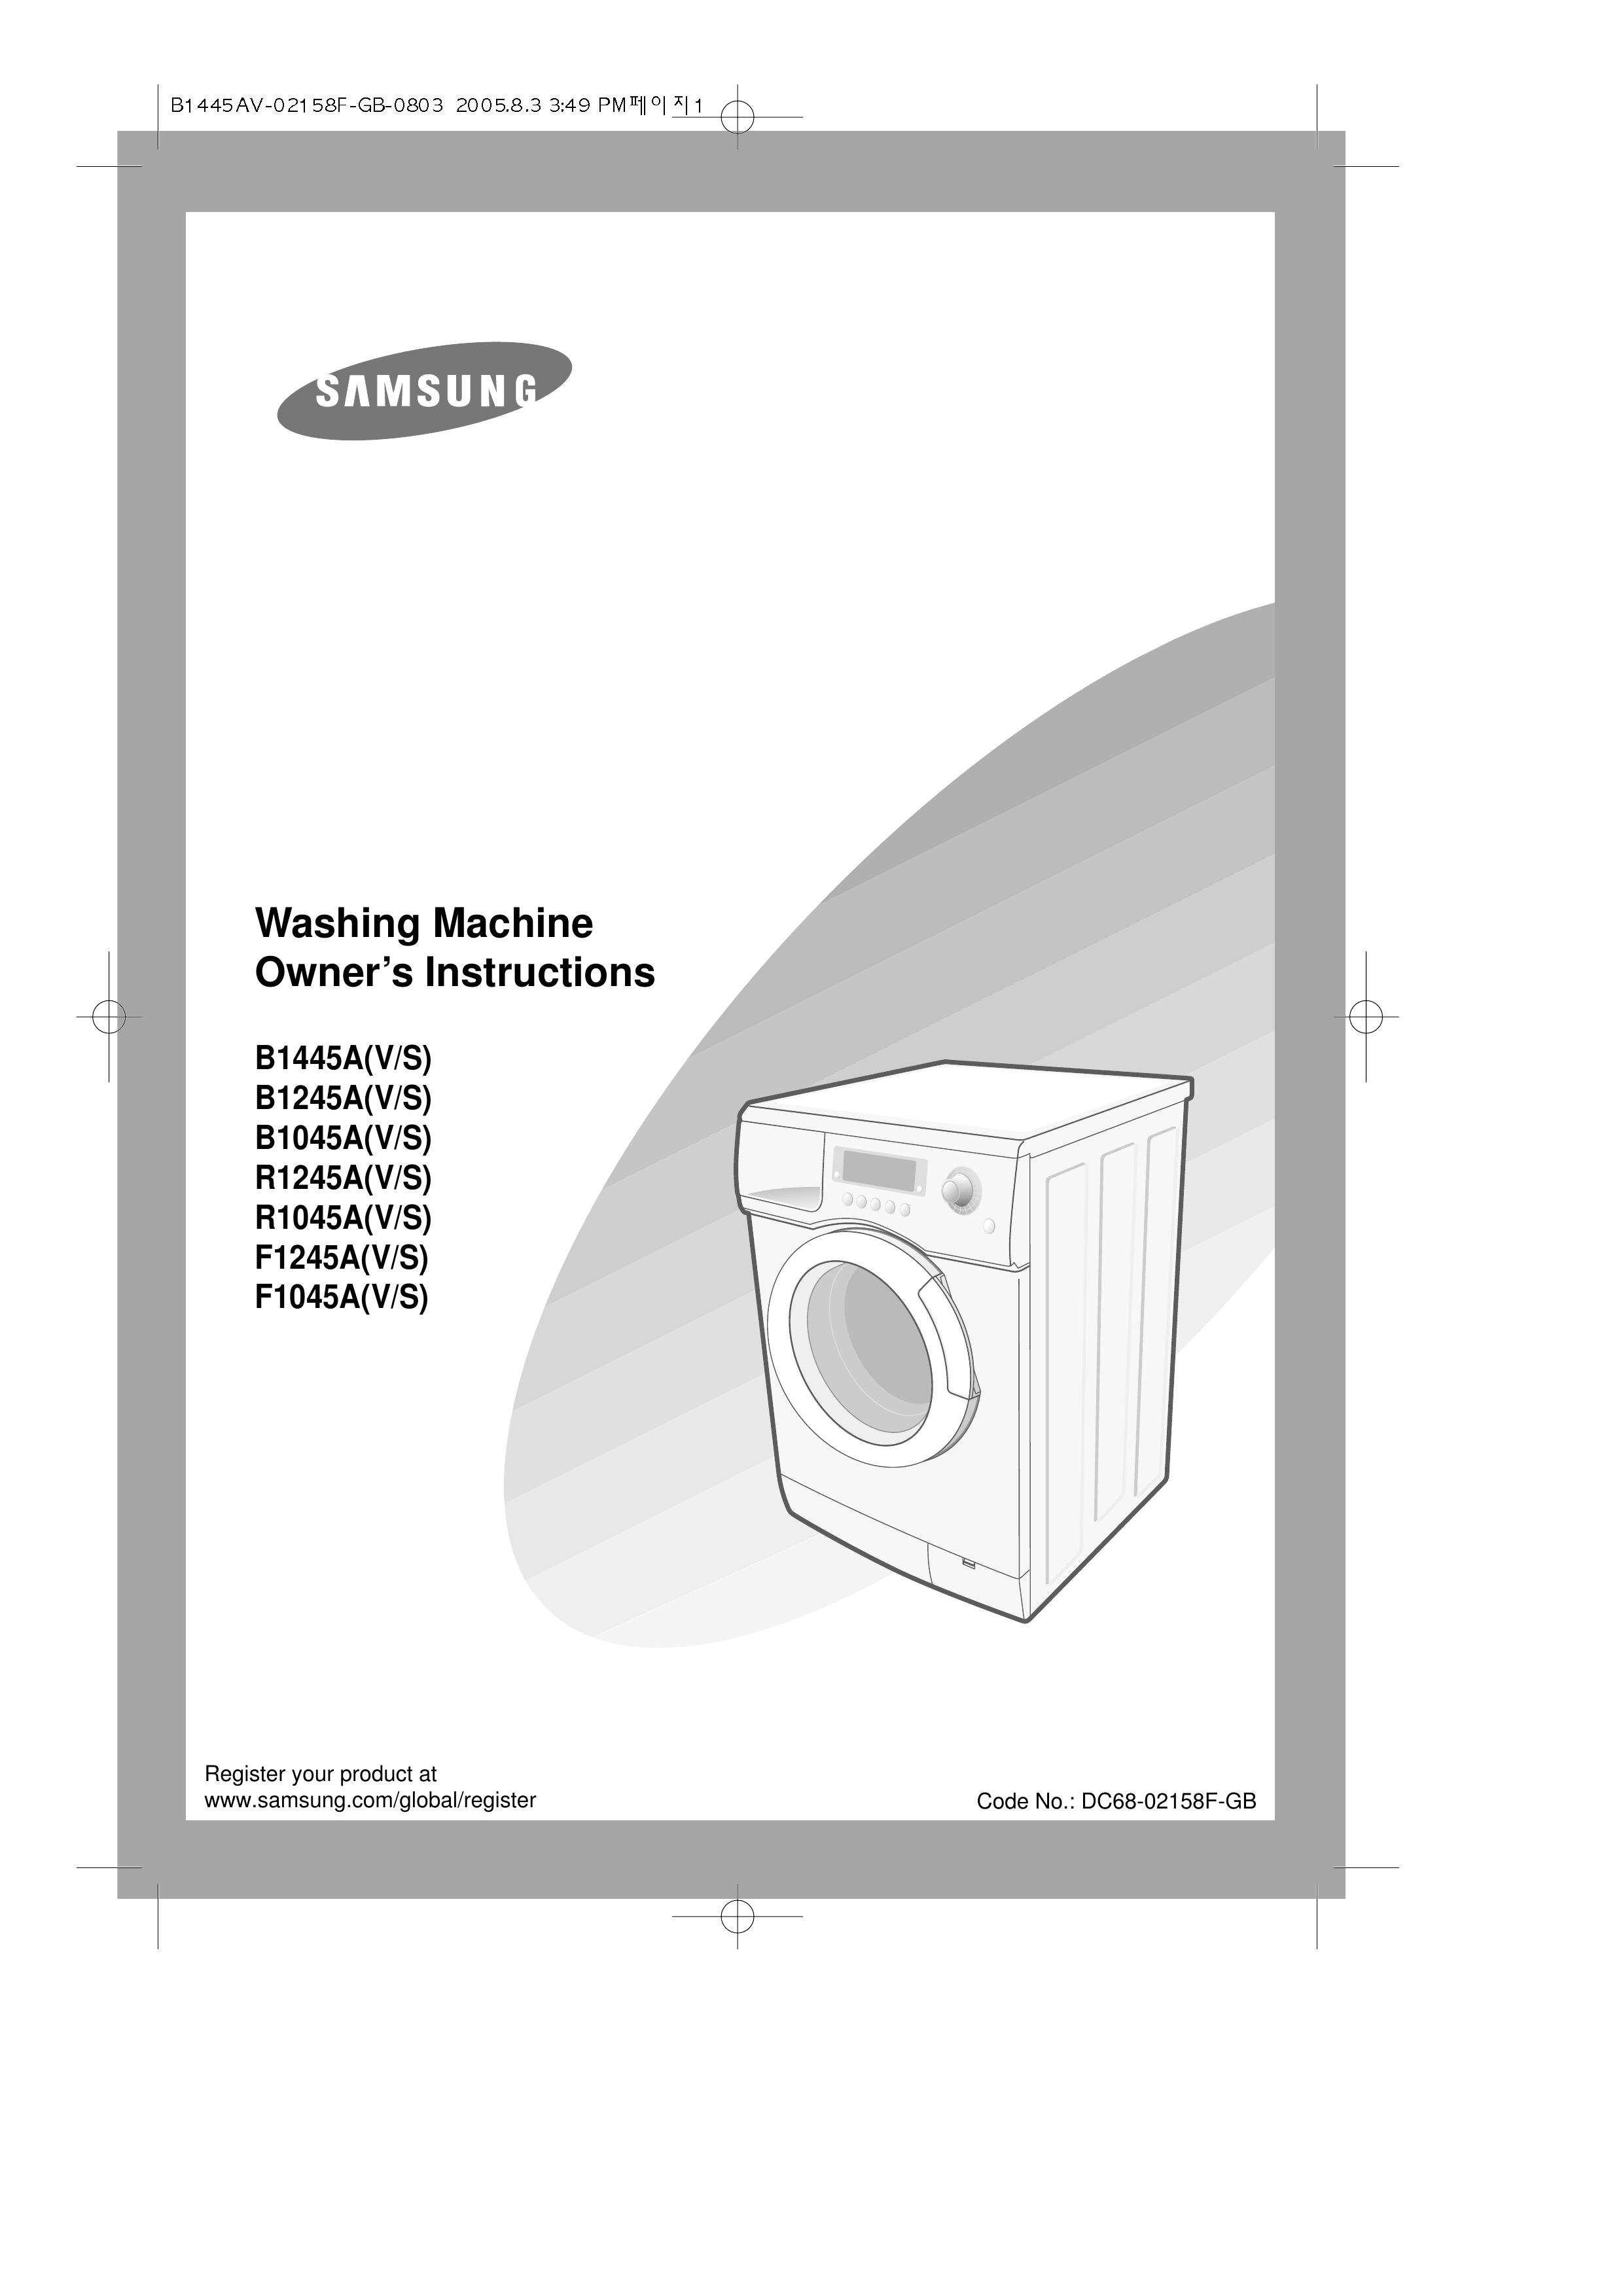 Samsung B1445A Washer User Manual